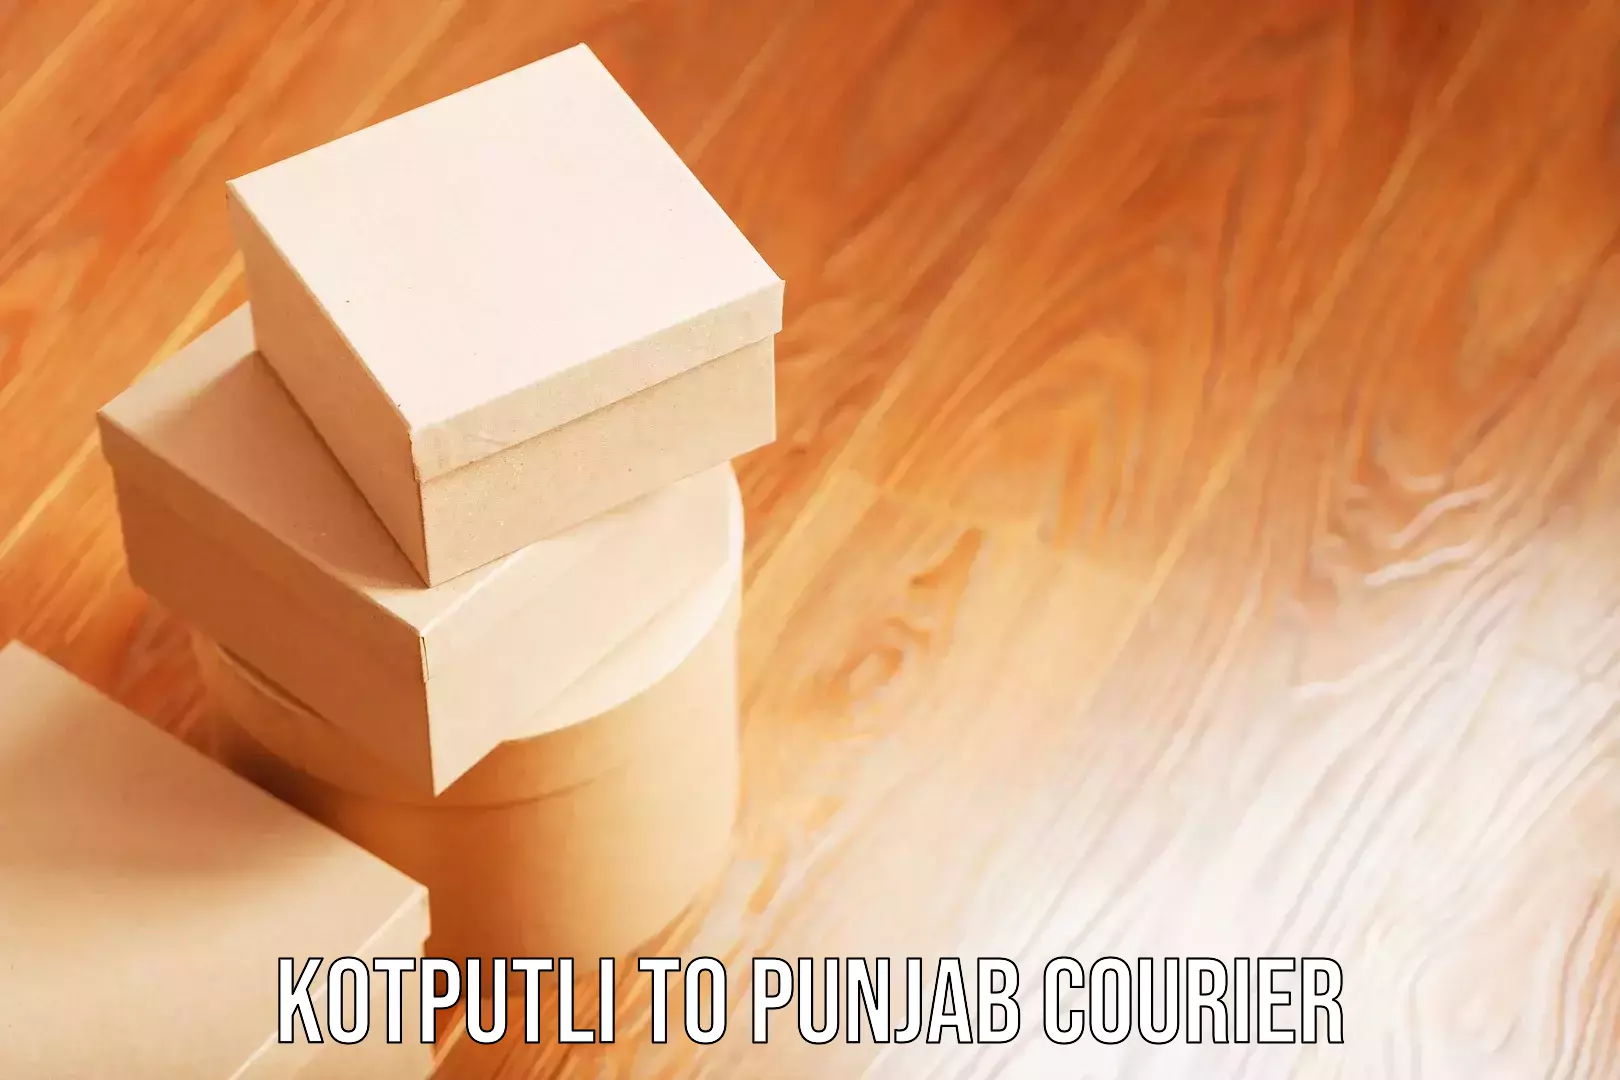 Baggage courier service Kotputli to Punjab